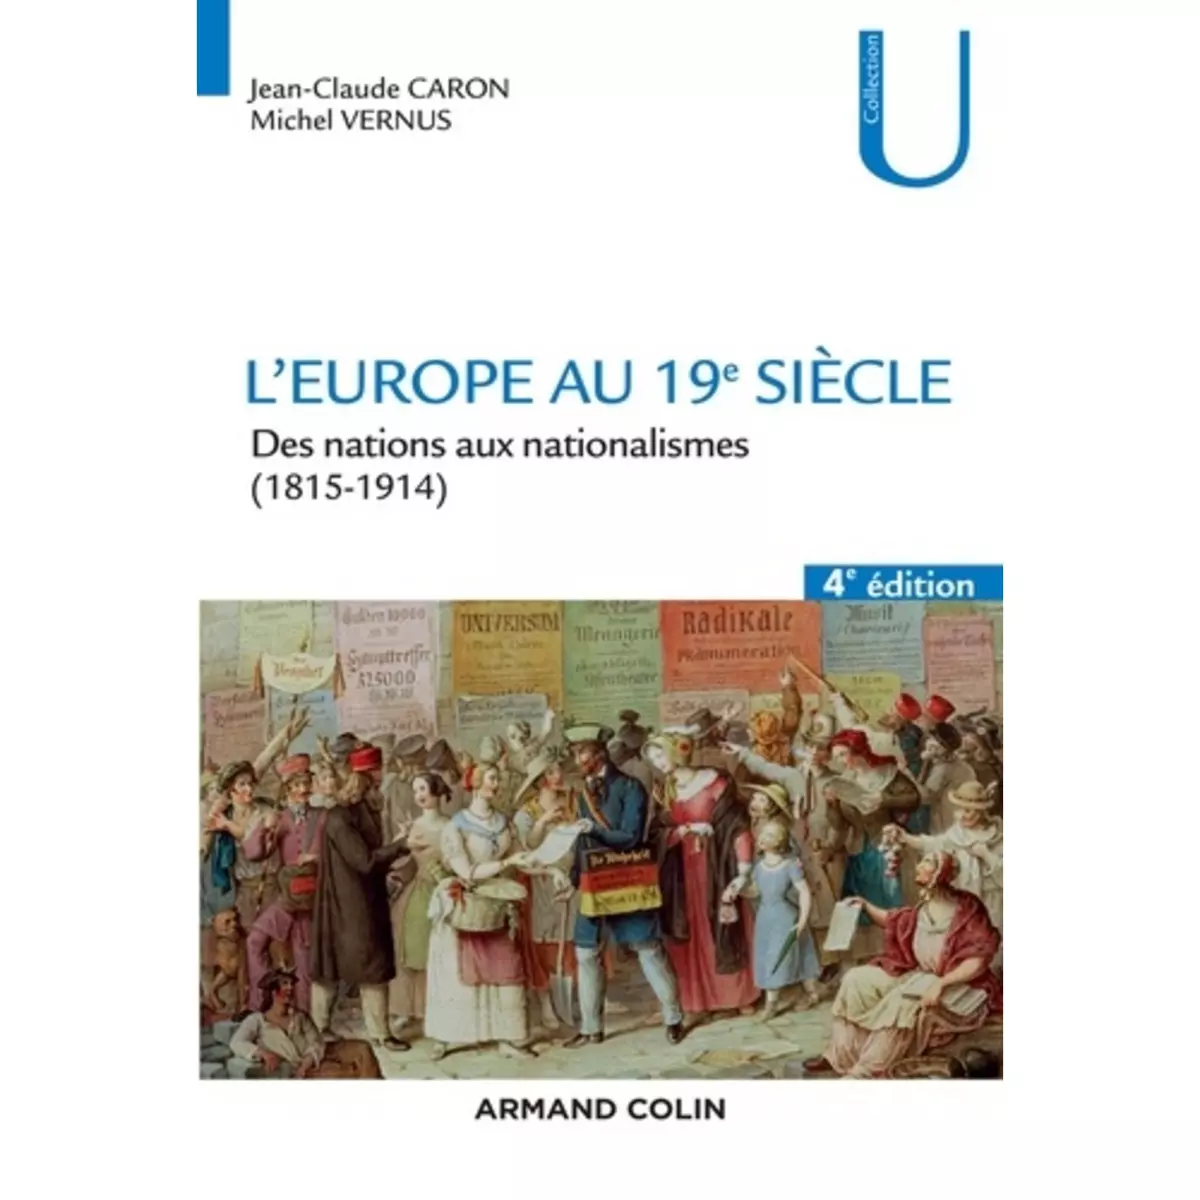  L'EUROPE AU 19E SIECLE. DES NATIONS AUX NATIONALISMES (1815-1914), 4E EDITION, Caron Jean-Claude